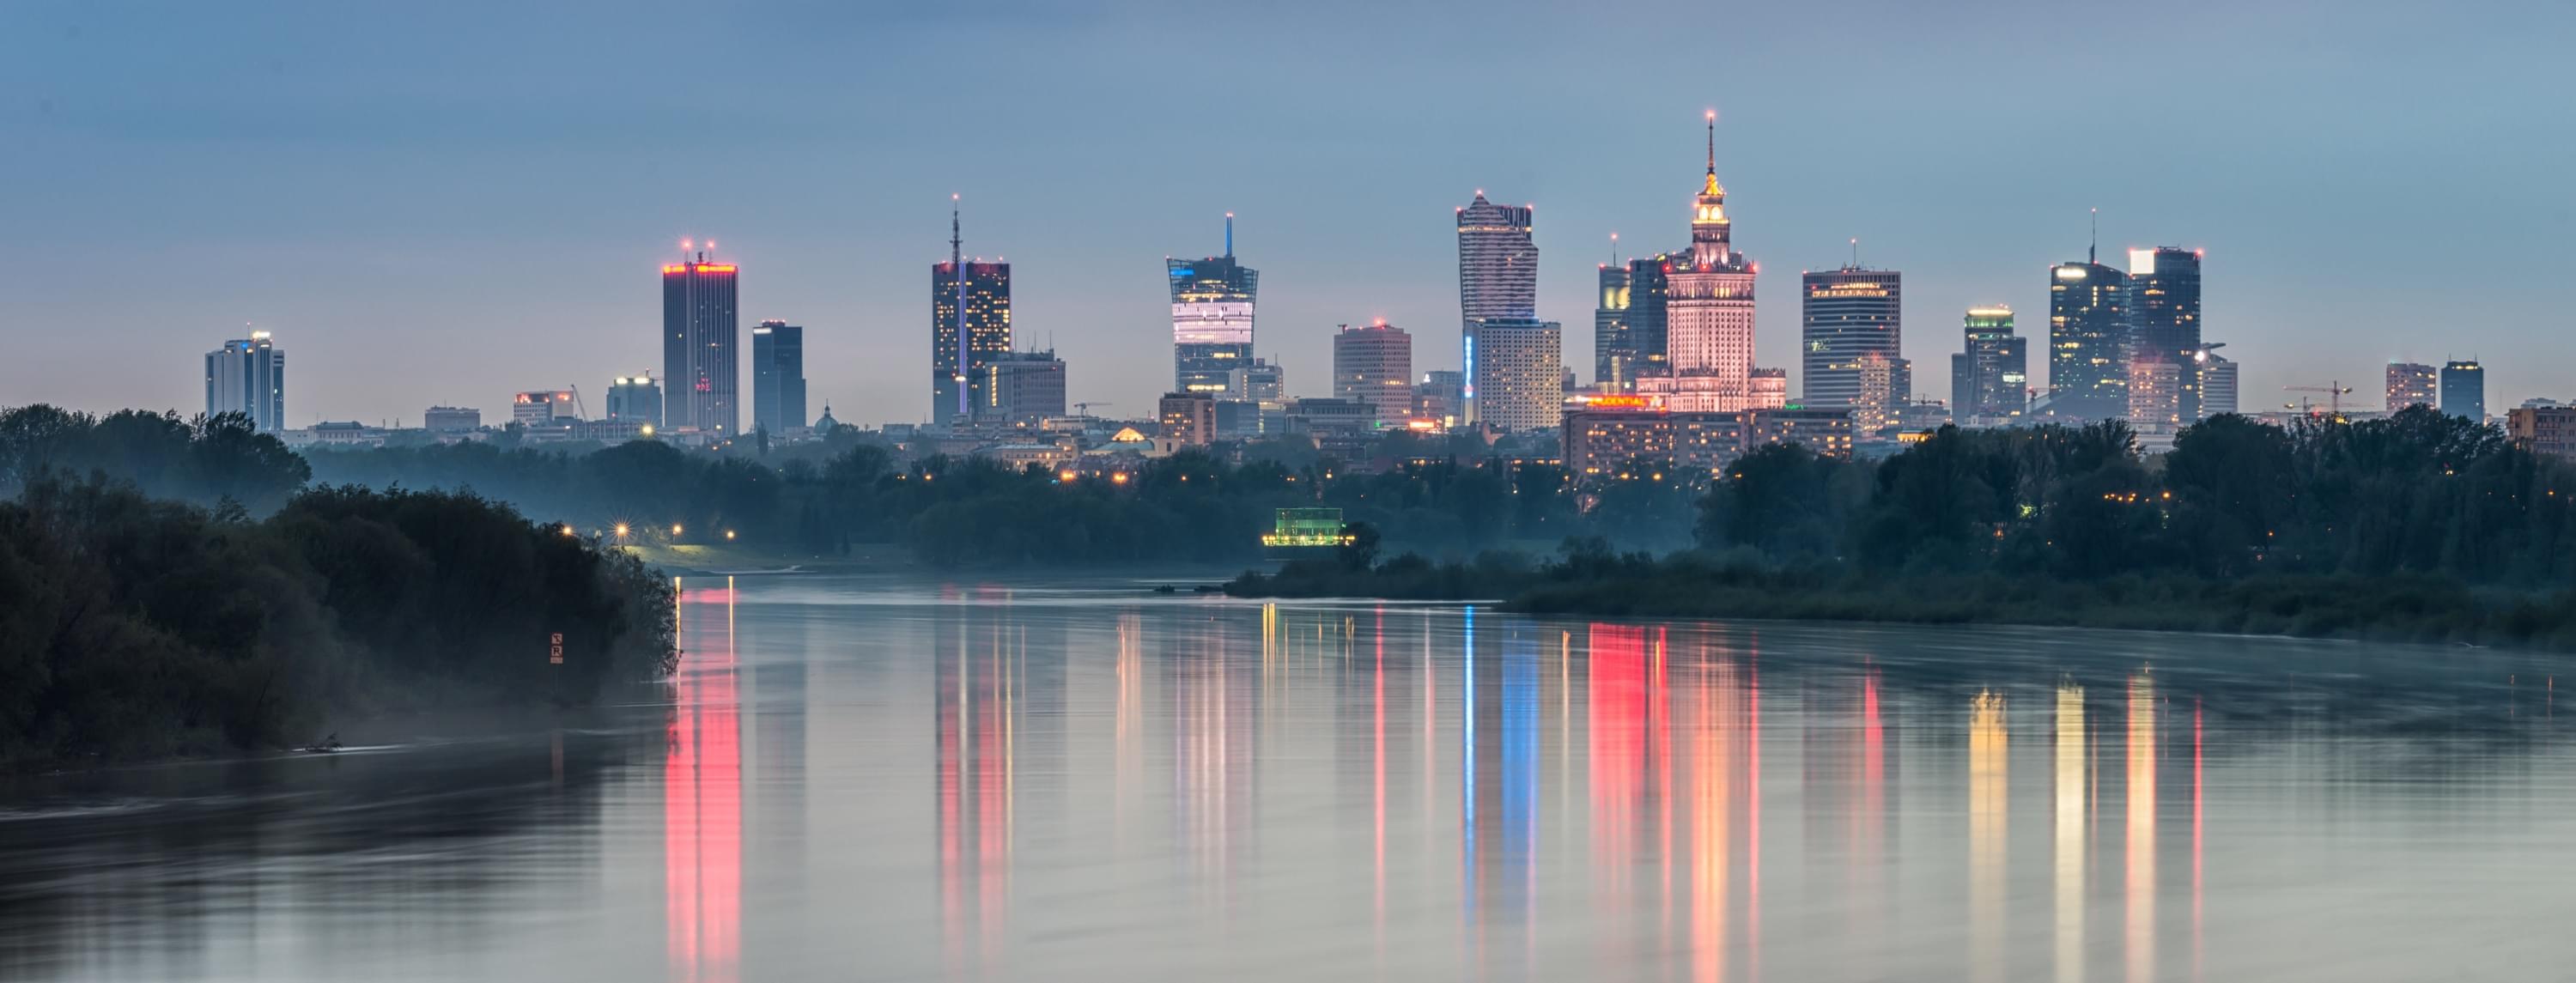 Warszawa - widok od strony Wisły